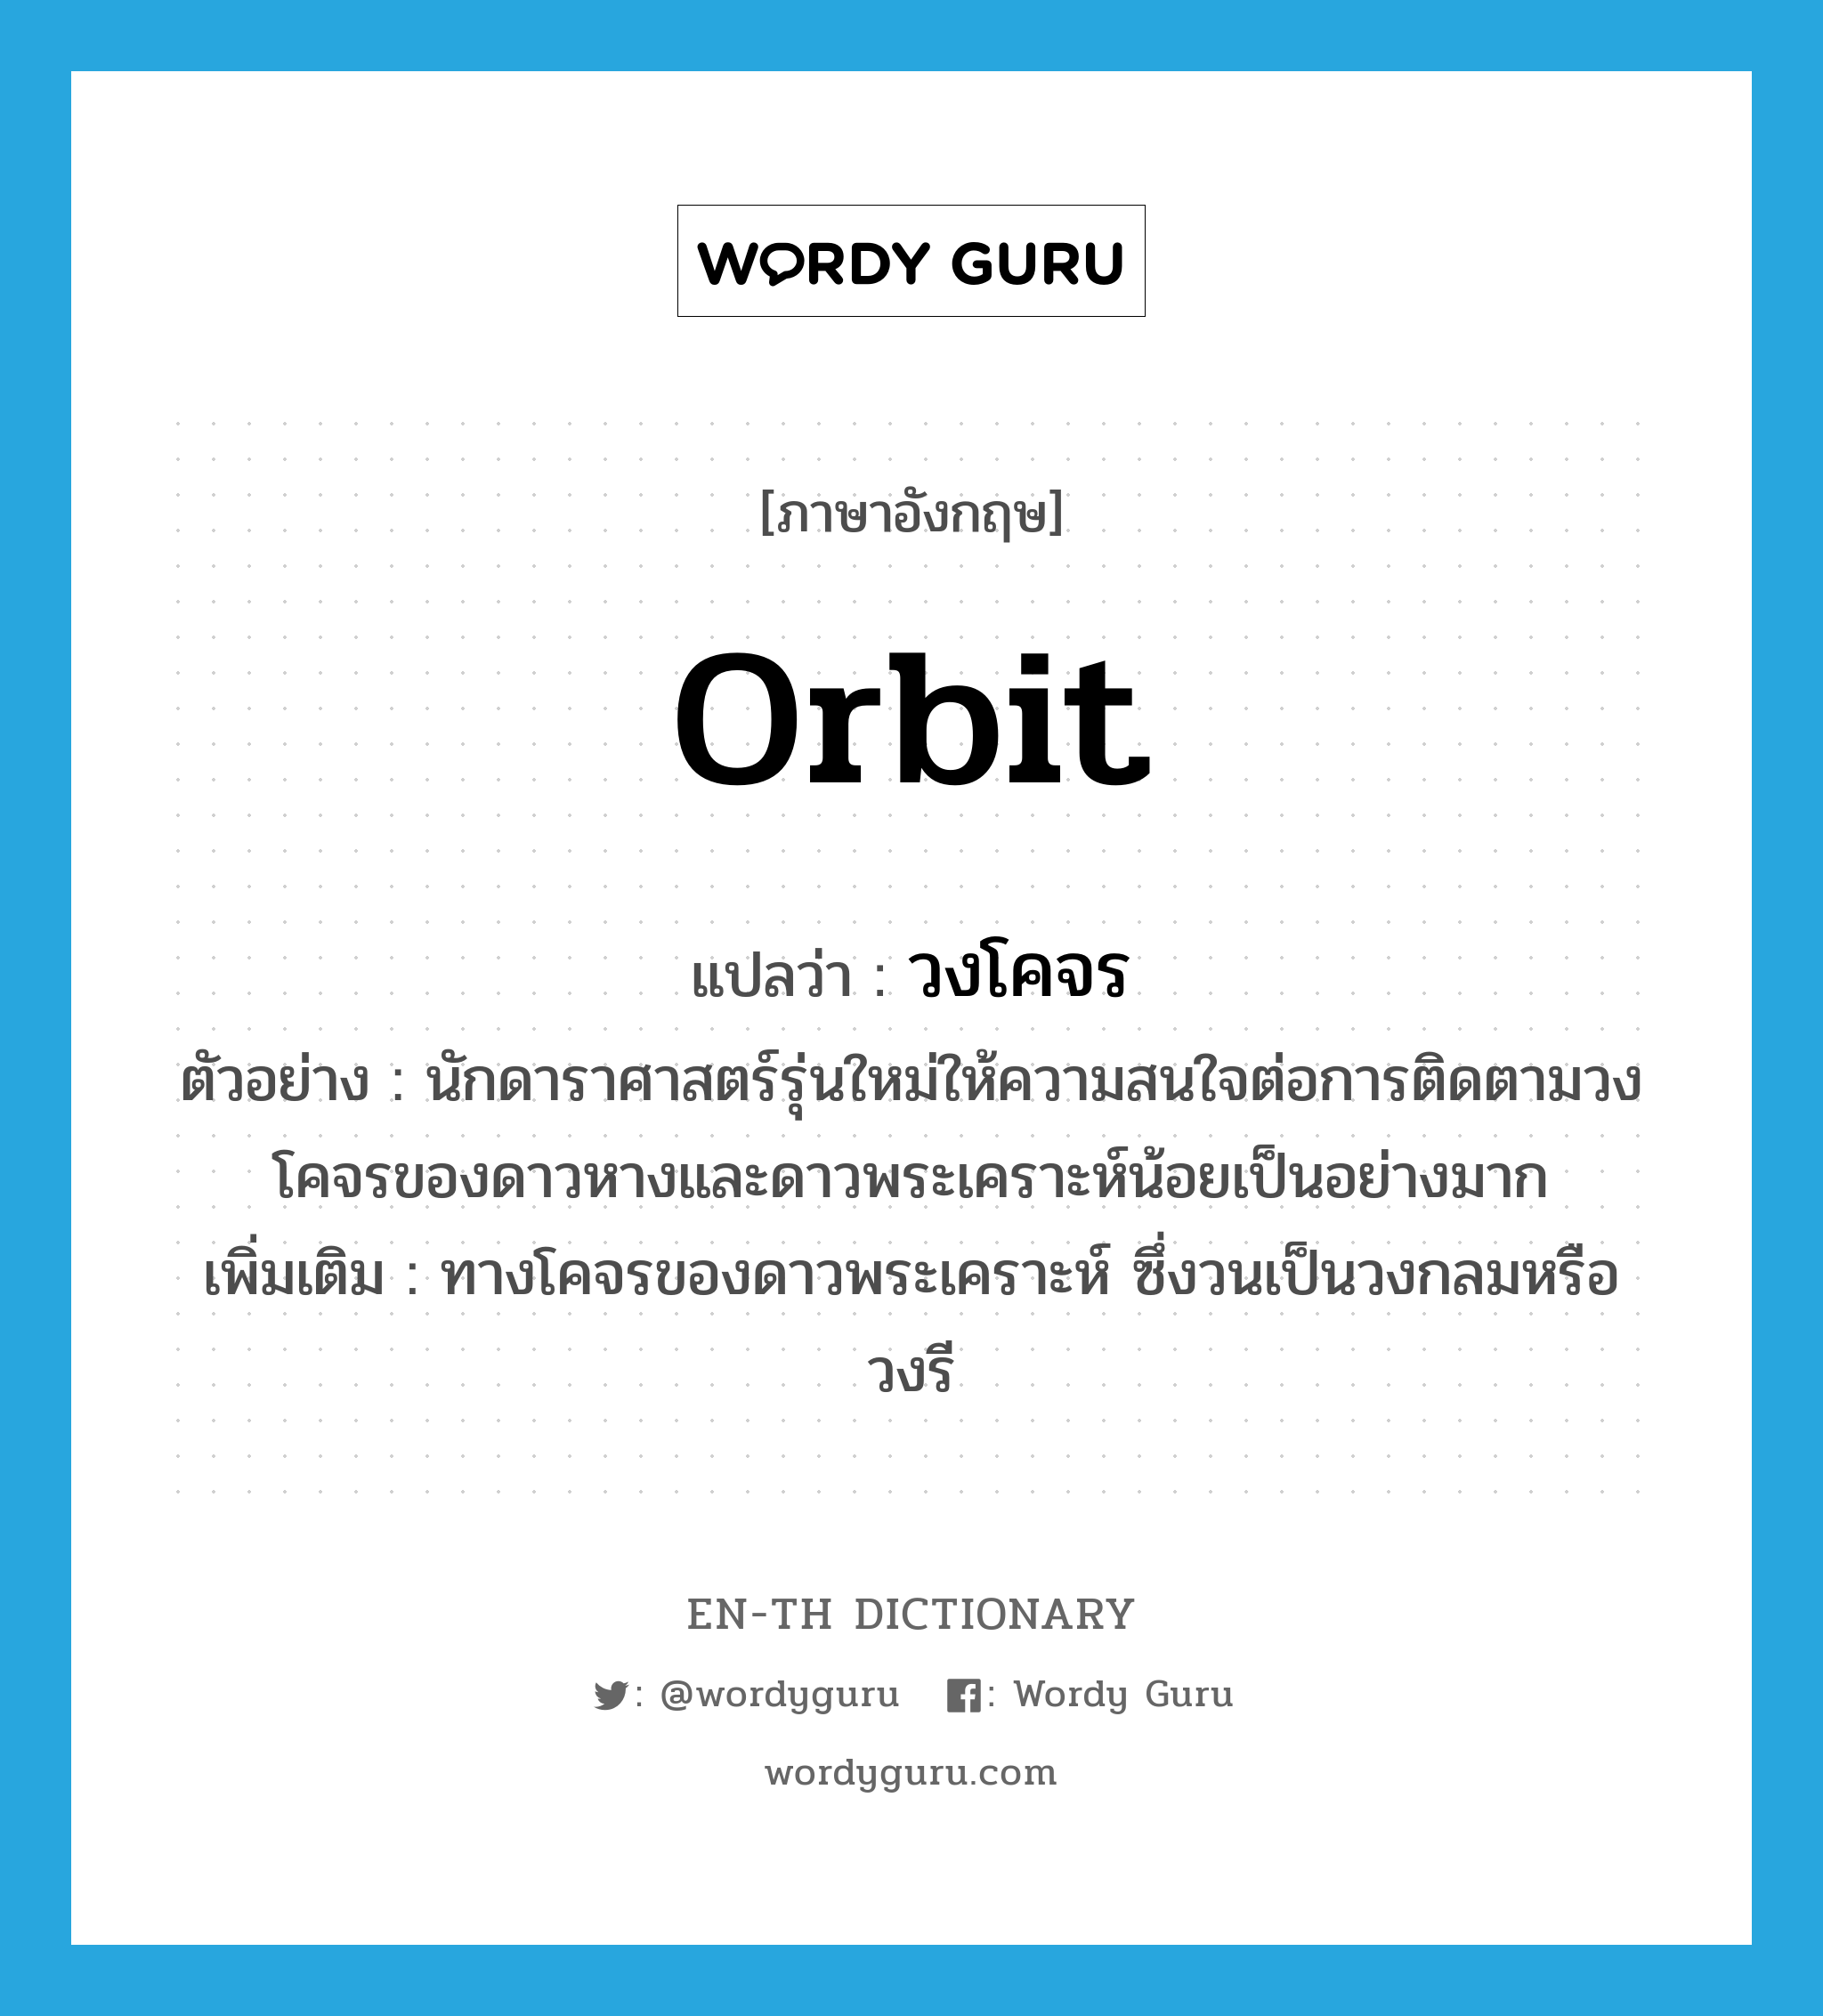 orbit แปลว่า?, คำศัพท์ภาษาอังกฤษ orbit แปลว่า วงโคจร ประเภท N ตัวอย่าง นักดาราศาสตร์รุ่นใหม่ให้ความสนใจต่อการติดตามวงโคจรของดาวหางและดาวพระเคราะห์น้อยเป็นอย่างมาก เพิ่มเติม ทางโคจรของดาวพระเคราะห์ ซึ่งวนเป็นวงกลมหรือวงรี หมวด N